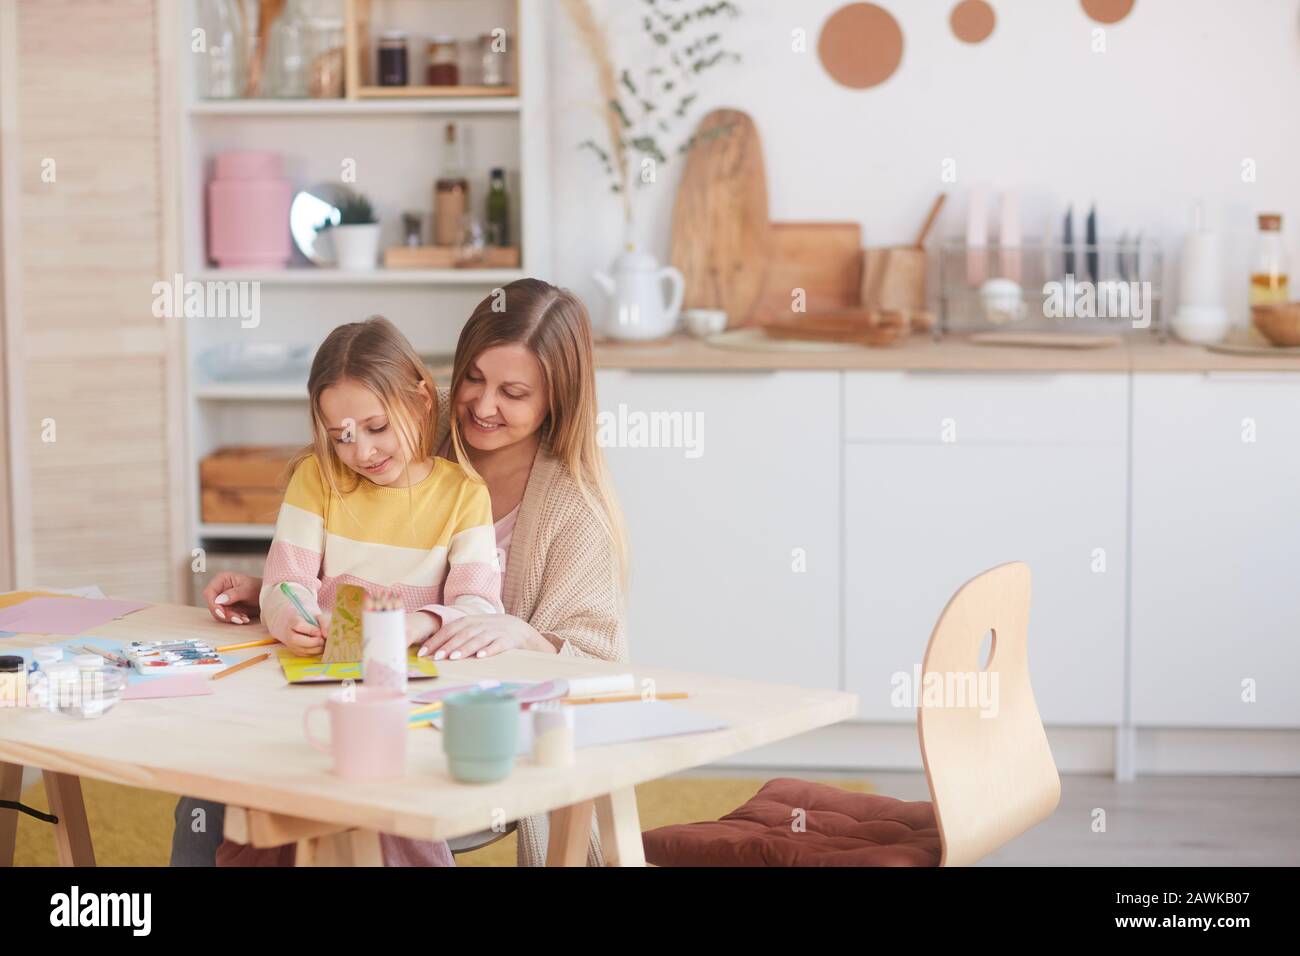 Warmtoniges Porträt der glücklichen Mutter, die kleine Tochter umarmt, während sie Bilder auf Holztisch in der Küche malte, Kopierraum Stockfoto